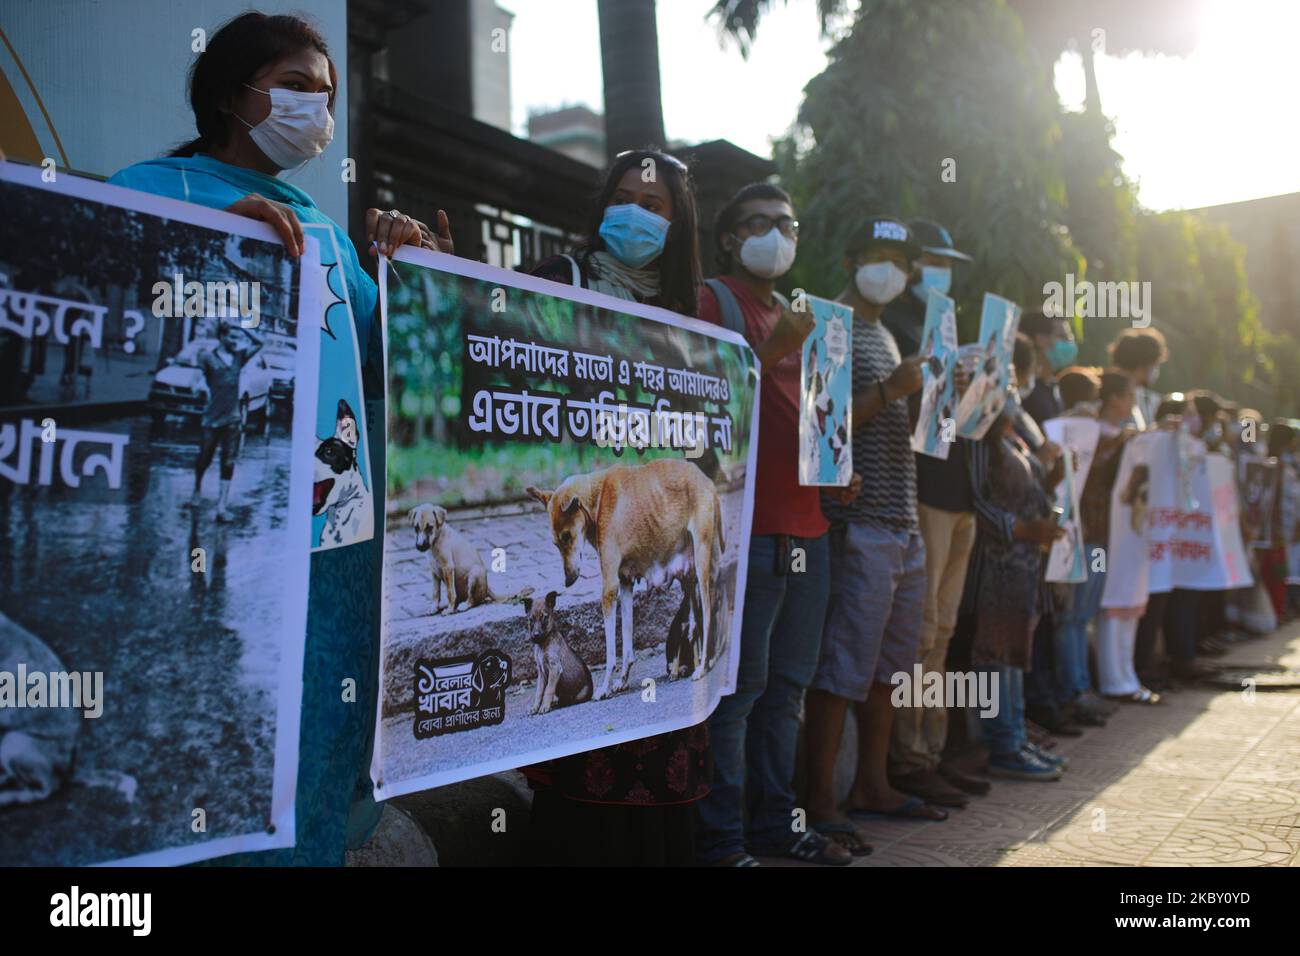 Les partisans des groupes de défense des droits des animaux forment une chaîne humaine qui proteste contre la décision des autorités de la ville de Dhaka de déplacer des chiens errants hors de la ville, devant Nagar Bhaban à Dhaka, au Bangladesh, sur 2 septembre 2020. (Photo de Rehman Asad/NurPhoto) Banque D'Images